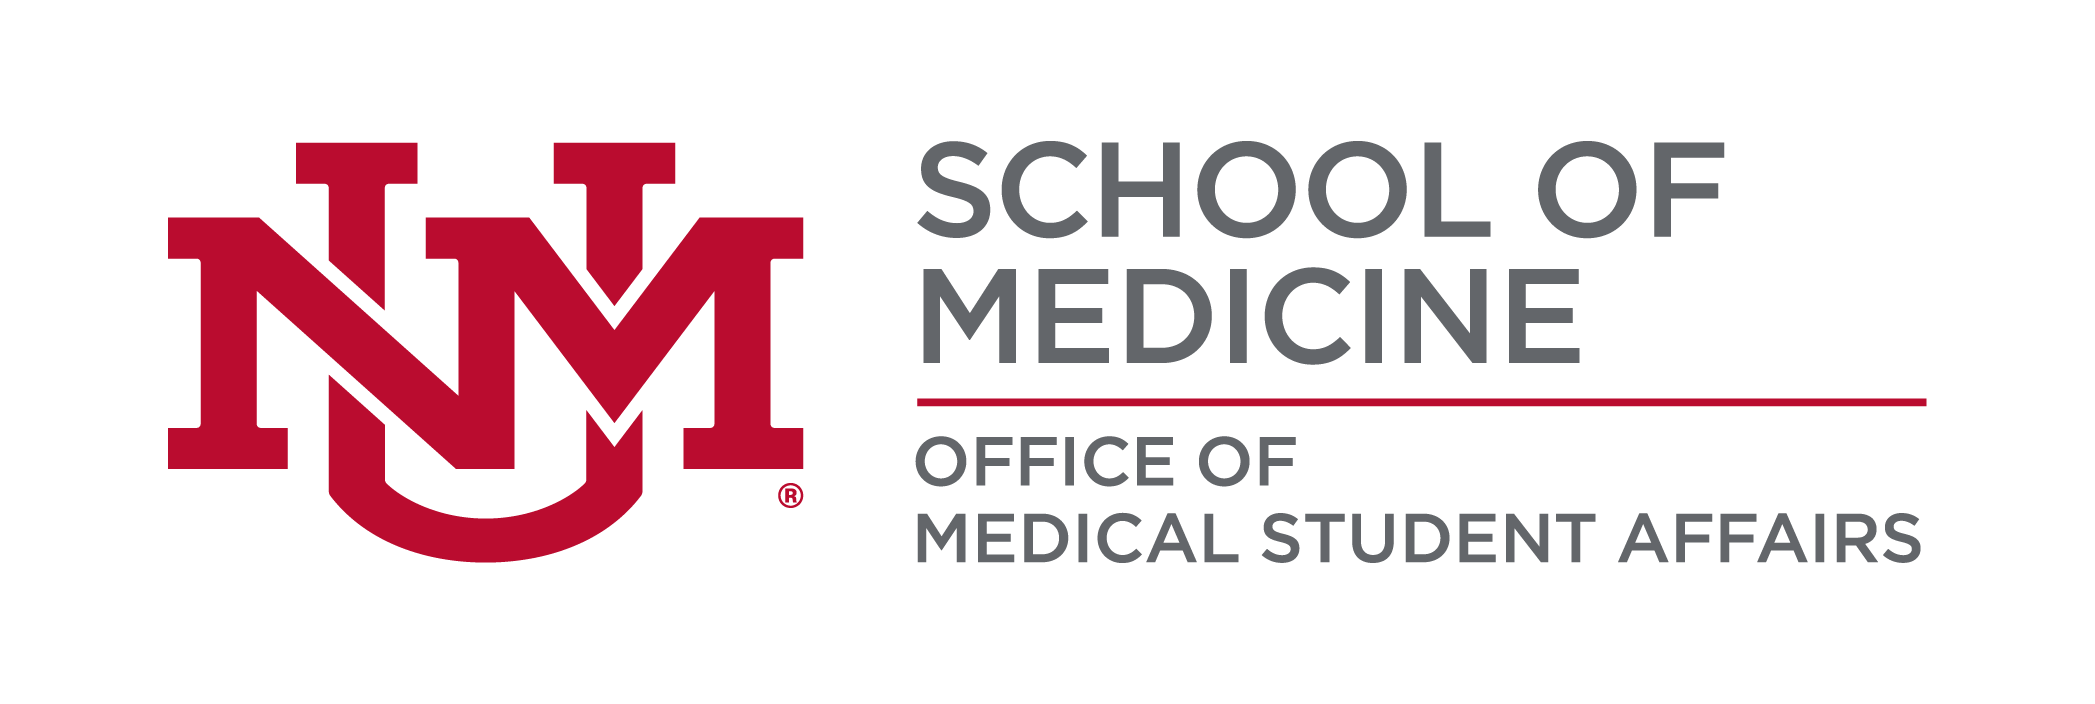 Facultad de Medicina UNM - Logotipo de la Oficina de Asuntos Estudiantiles de Medicina.